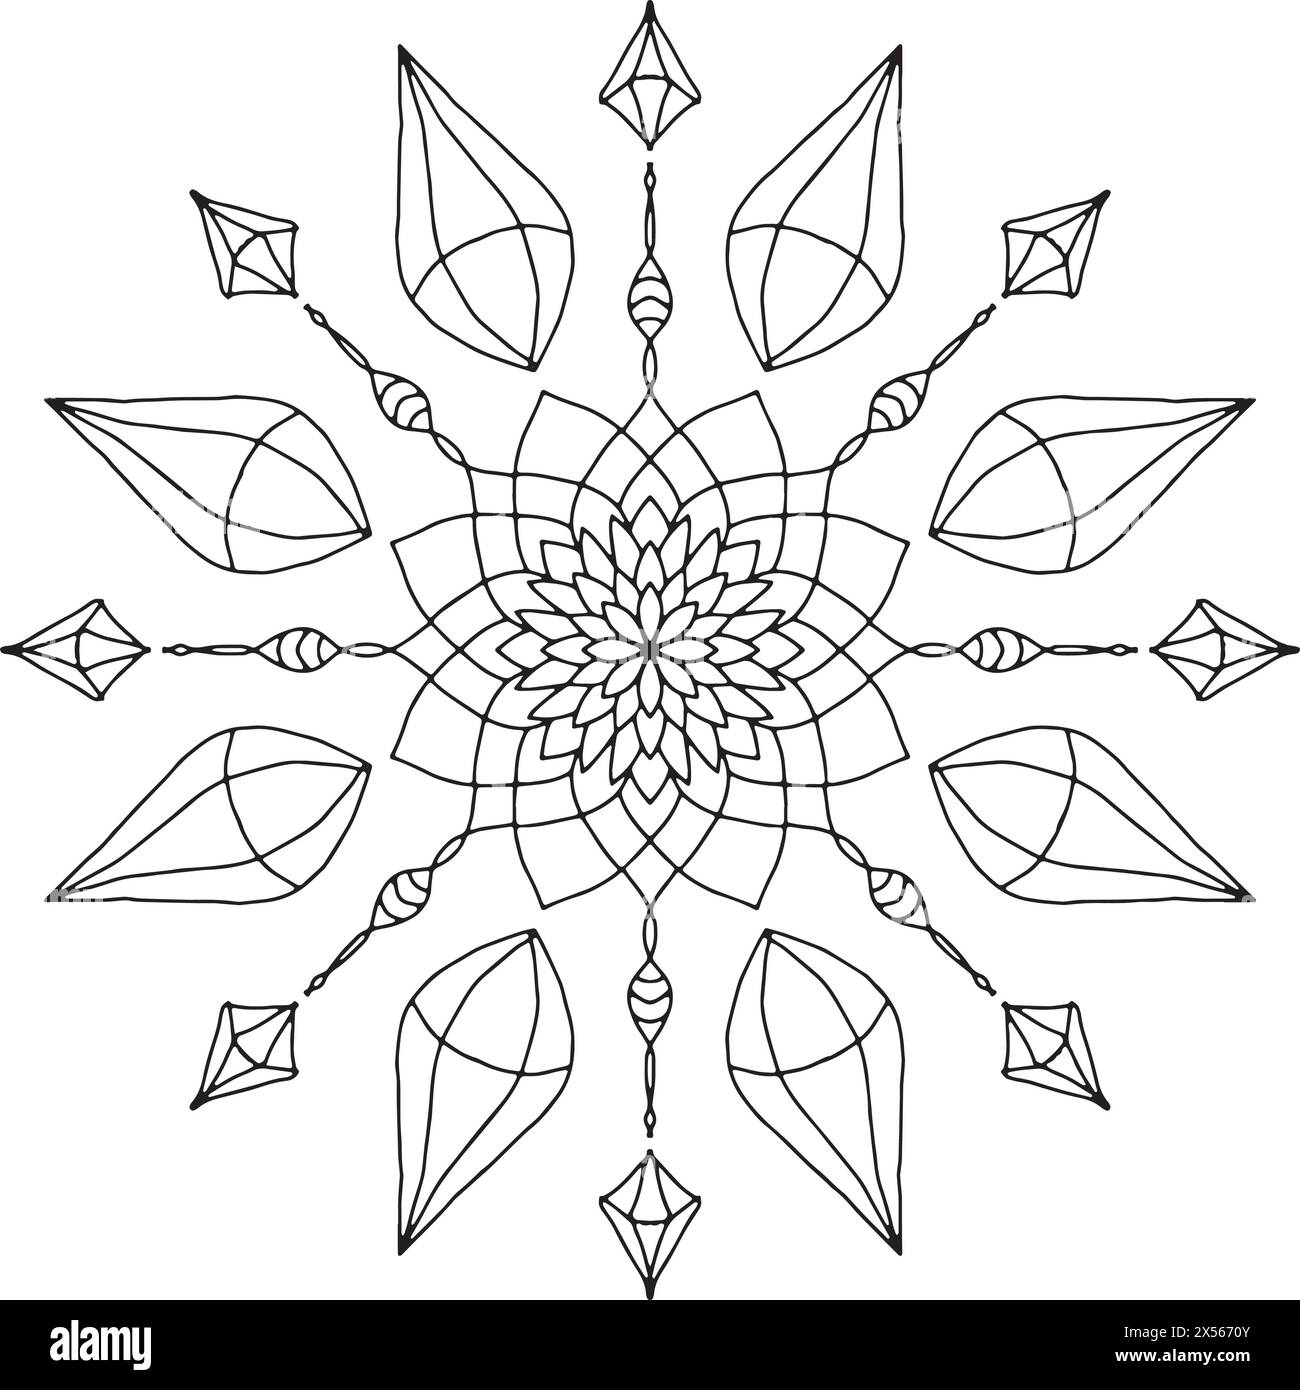 Design astratto del mandala con cerchi concentrici, gemme e foglie Illustrazione Vettoriale